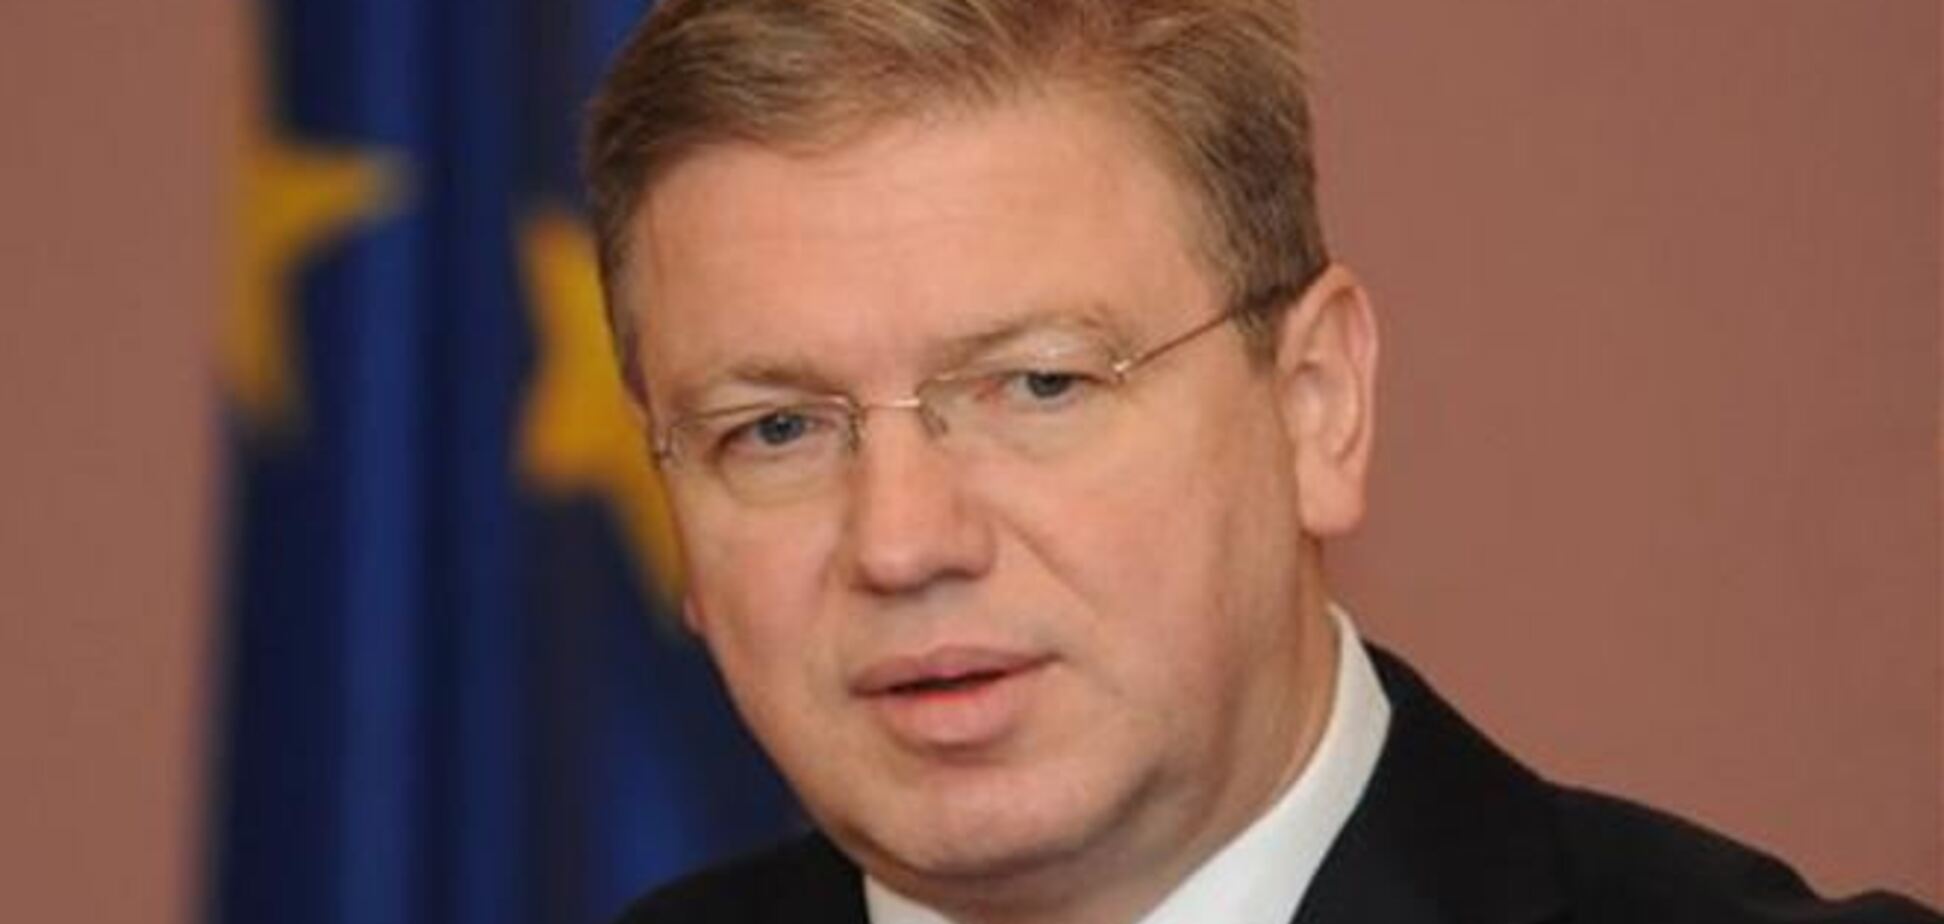 Фюле: подготовка подписания ассоциации восстановит доверие между Украиной и ЕС